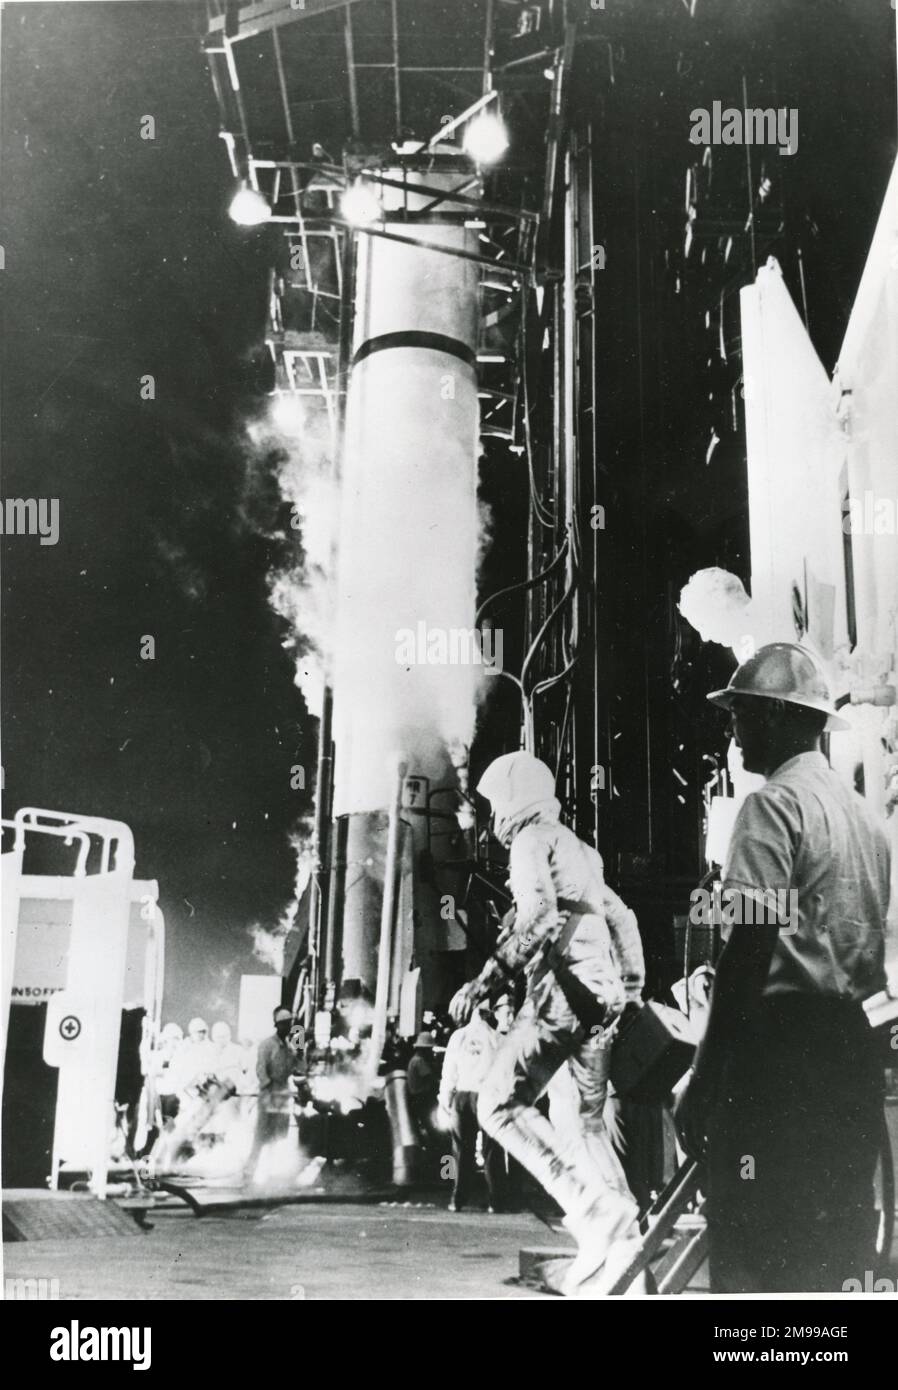 Alan Shepard Jr geht in Richtung des Redstone-Raketen in Cape Canaveral, bevor er am 5. Mai 1961 seinen erfolgreichen 302mile. Suborbitalen lob betritt. Stockfoto